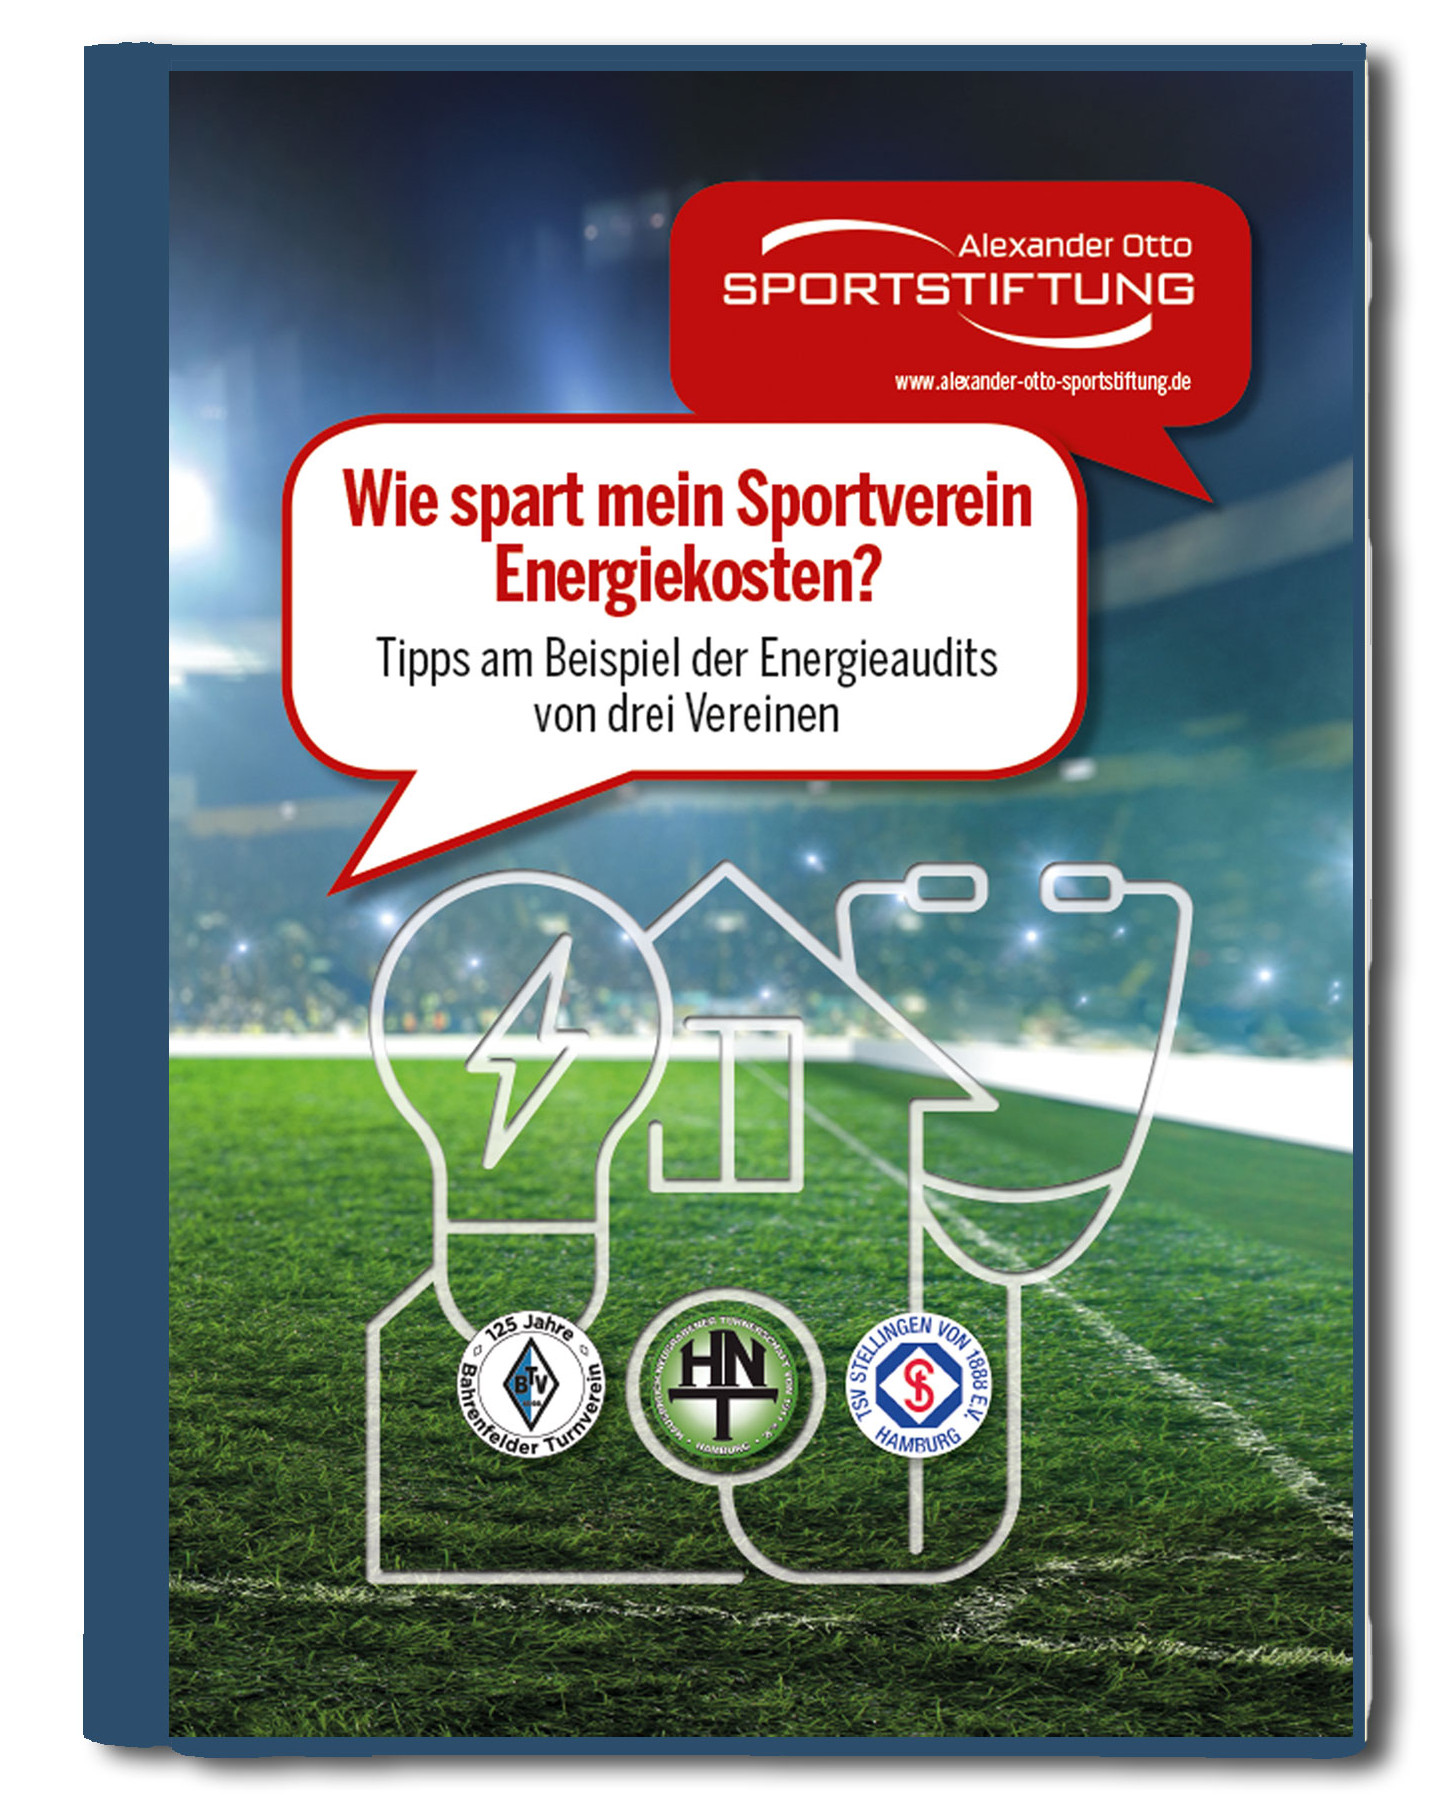 Handbuch "Wie spart mein Sportverein Energiekosten" | Bildquelle: Alexander Otto Stiftung